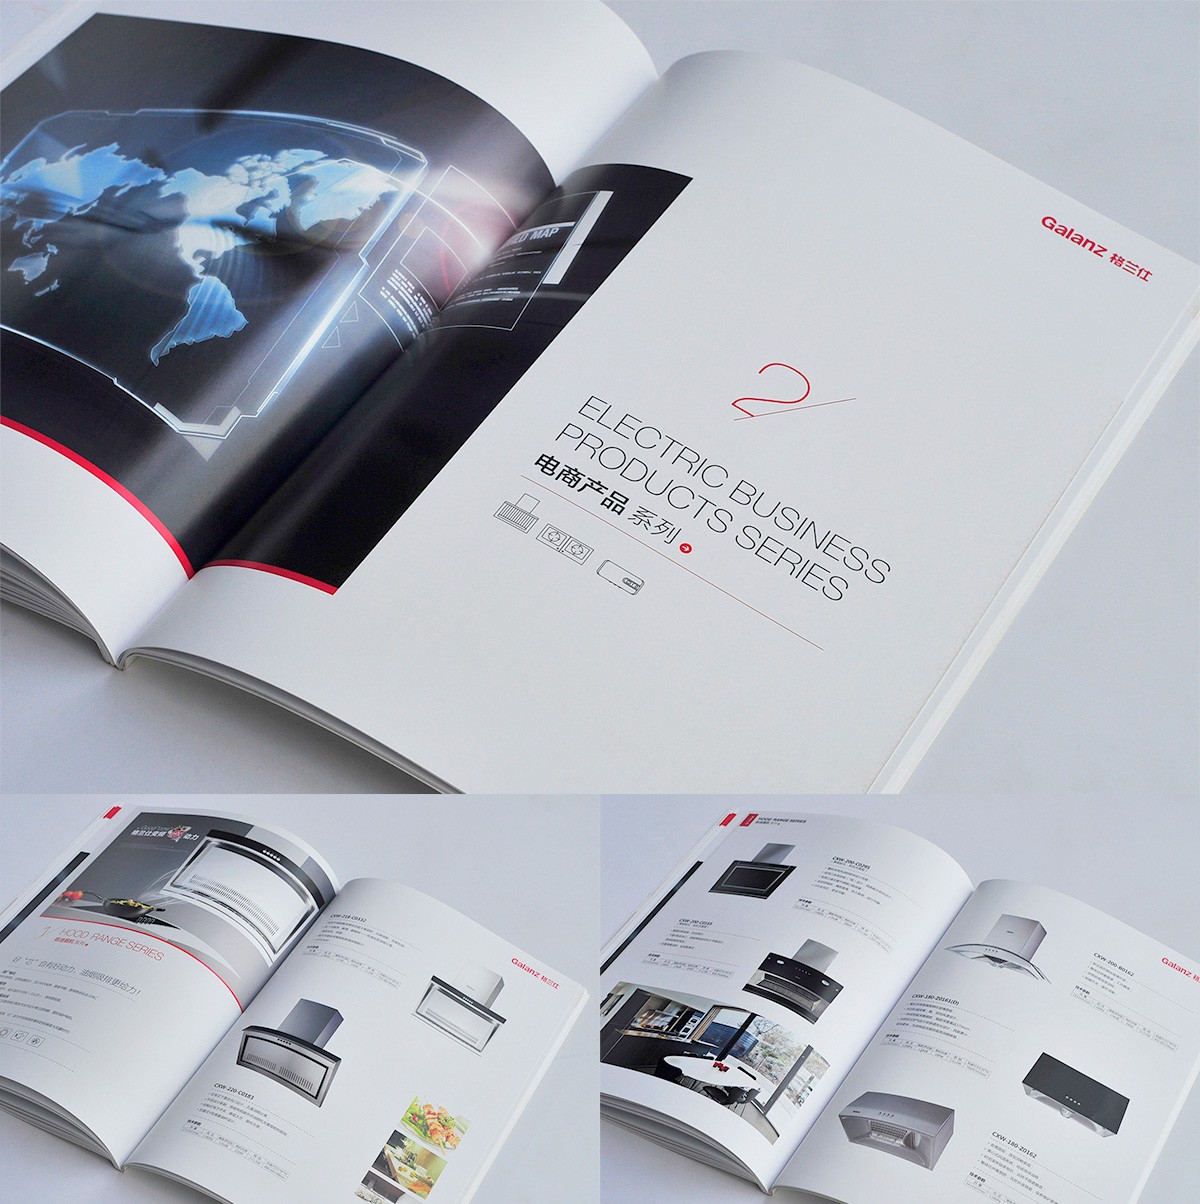 格兰仕品牌宣传画册设计/包装设计效果图5